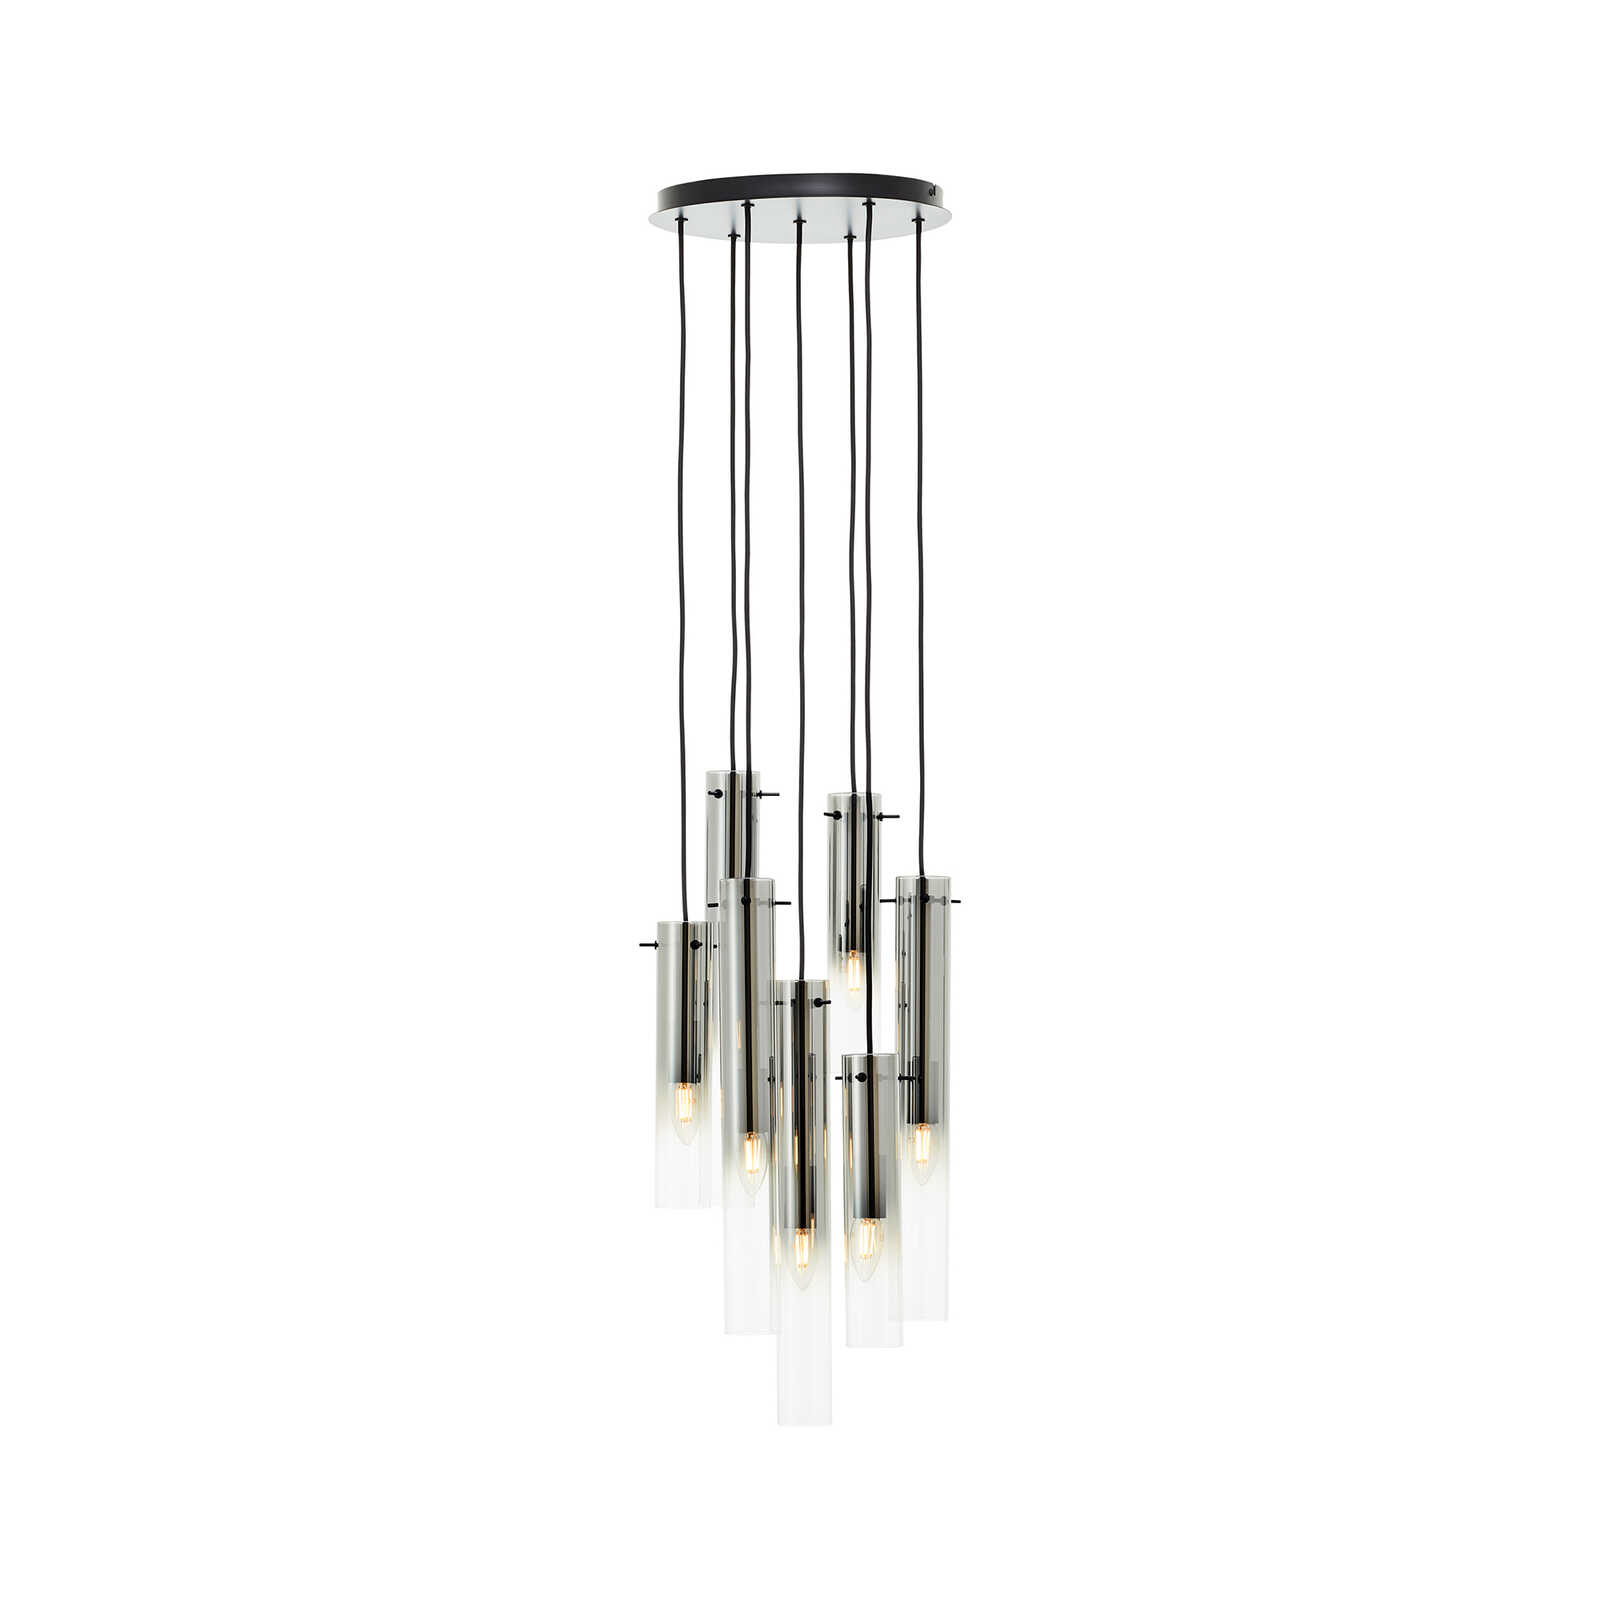 Metalen hanglamp - Hilla 3 - Grijs
